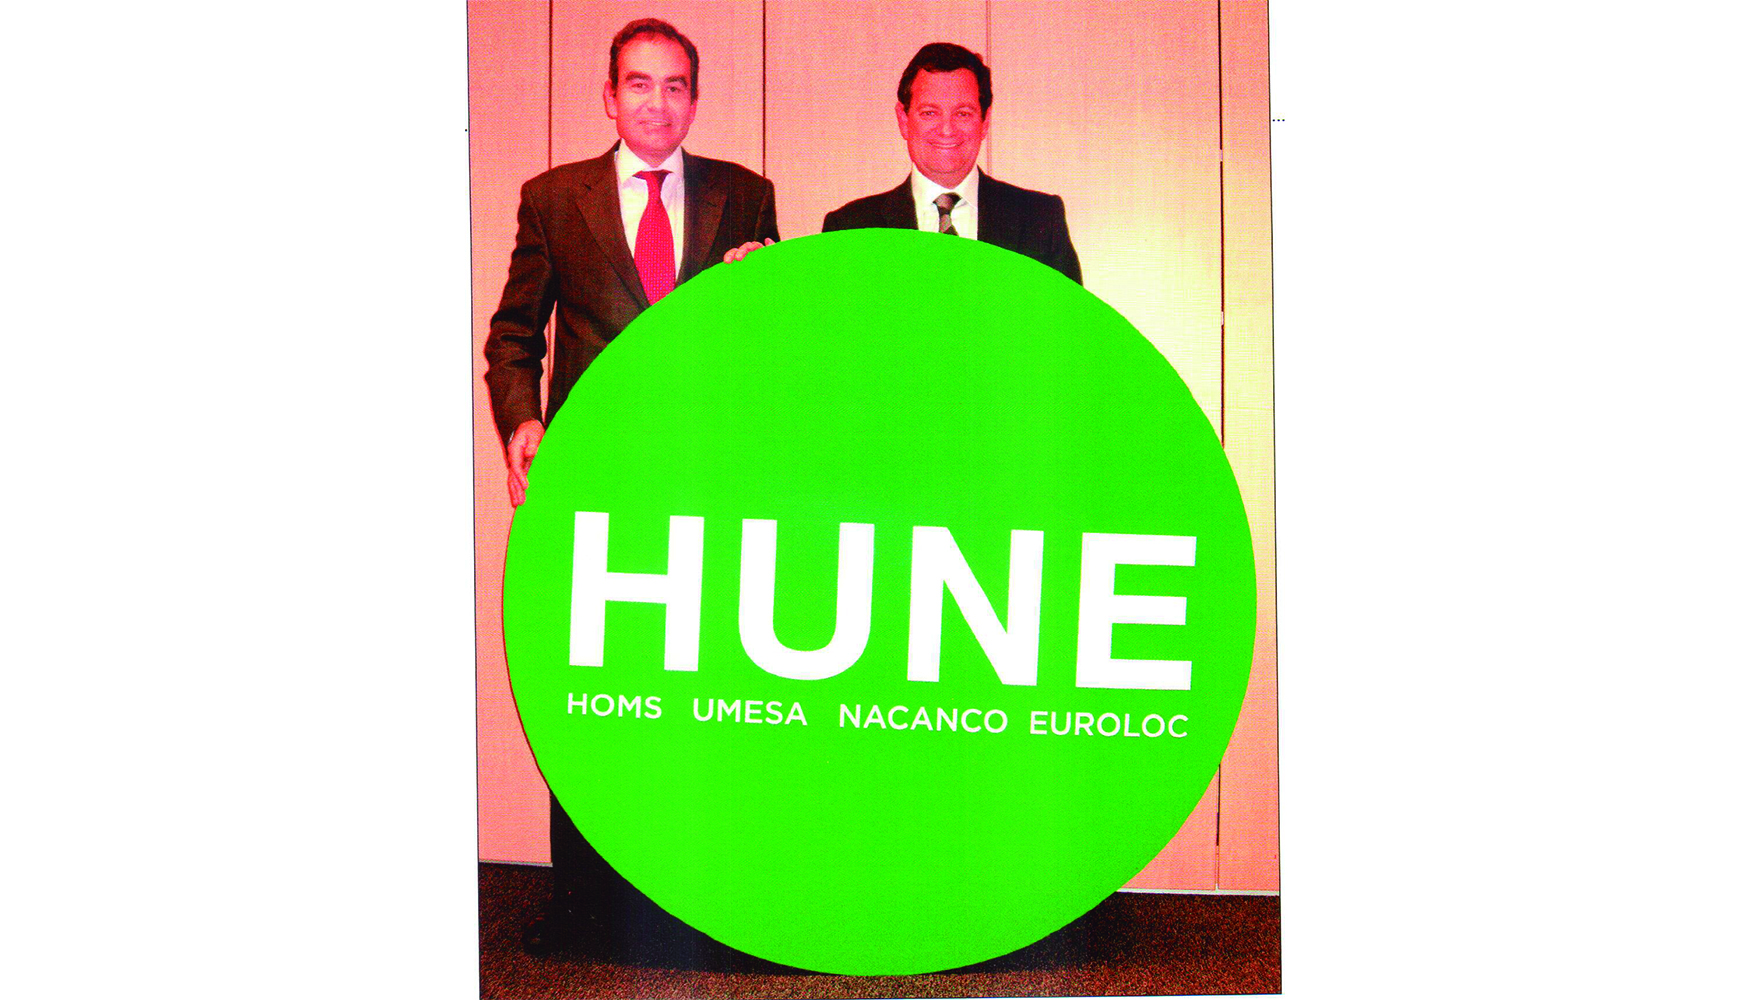 Juan Dionis, consejero delegado de Hune, y Luis Camilleri, director general de Advent Internacional en Espaa, con la nueva imagen de la marca...